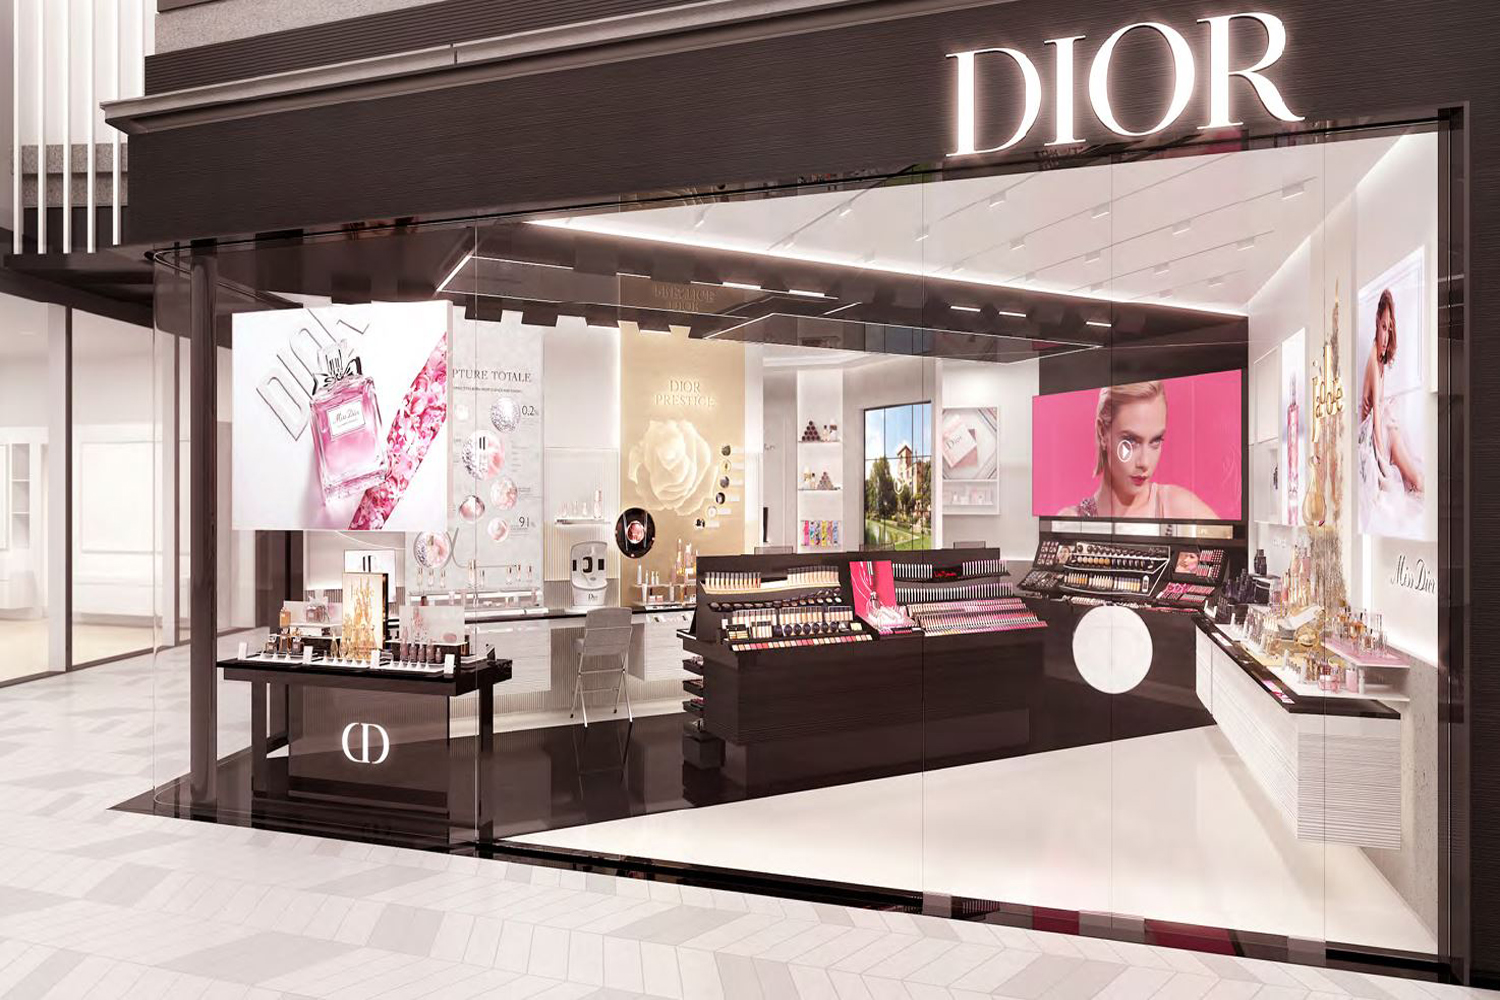 dior beauty shop